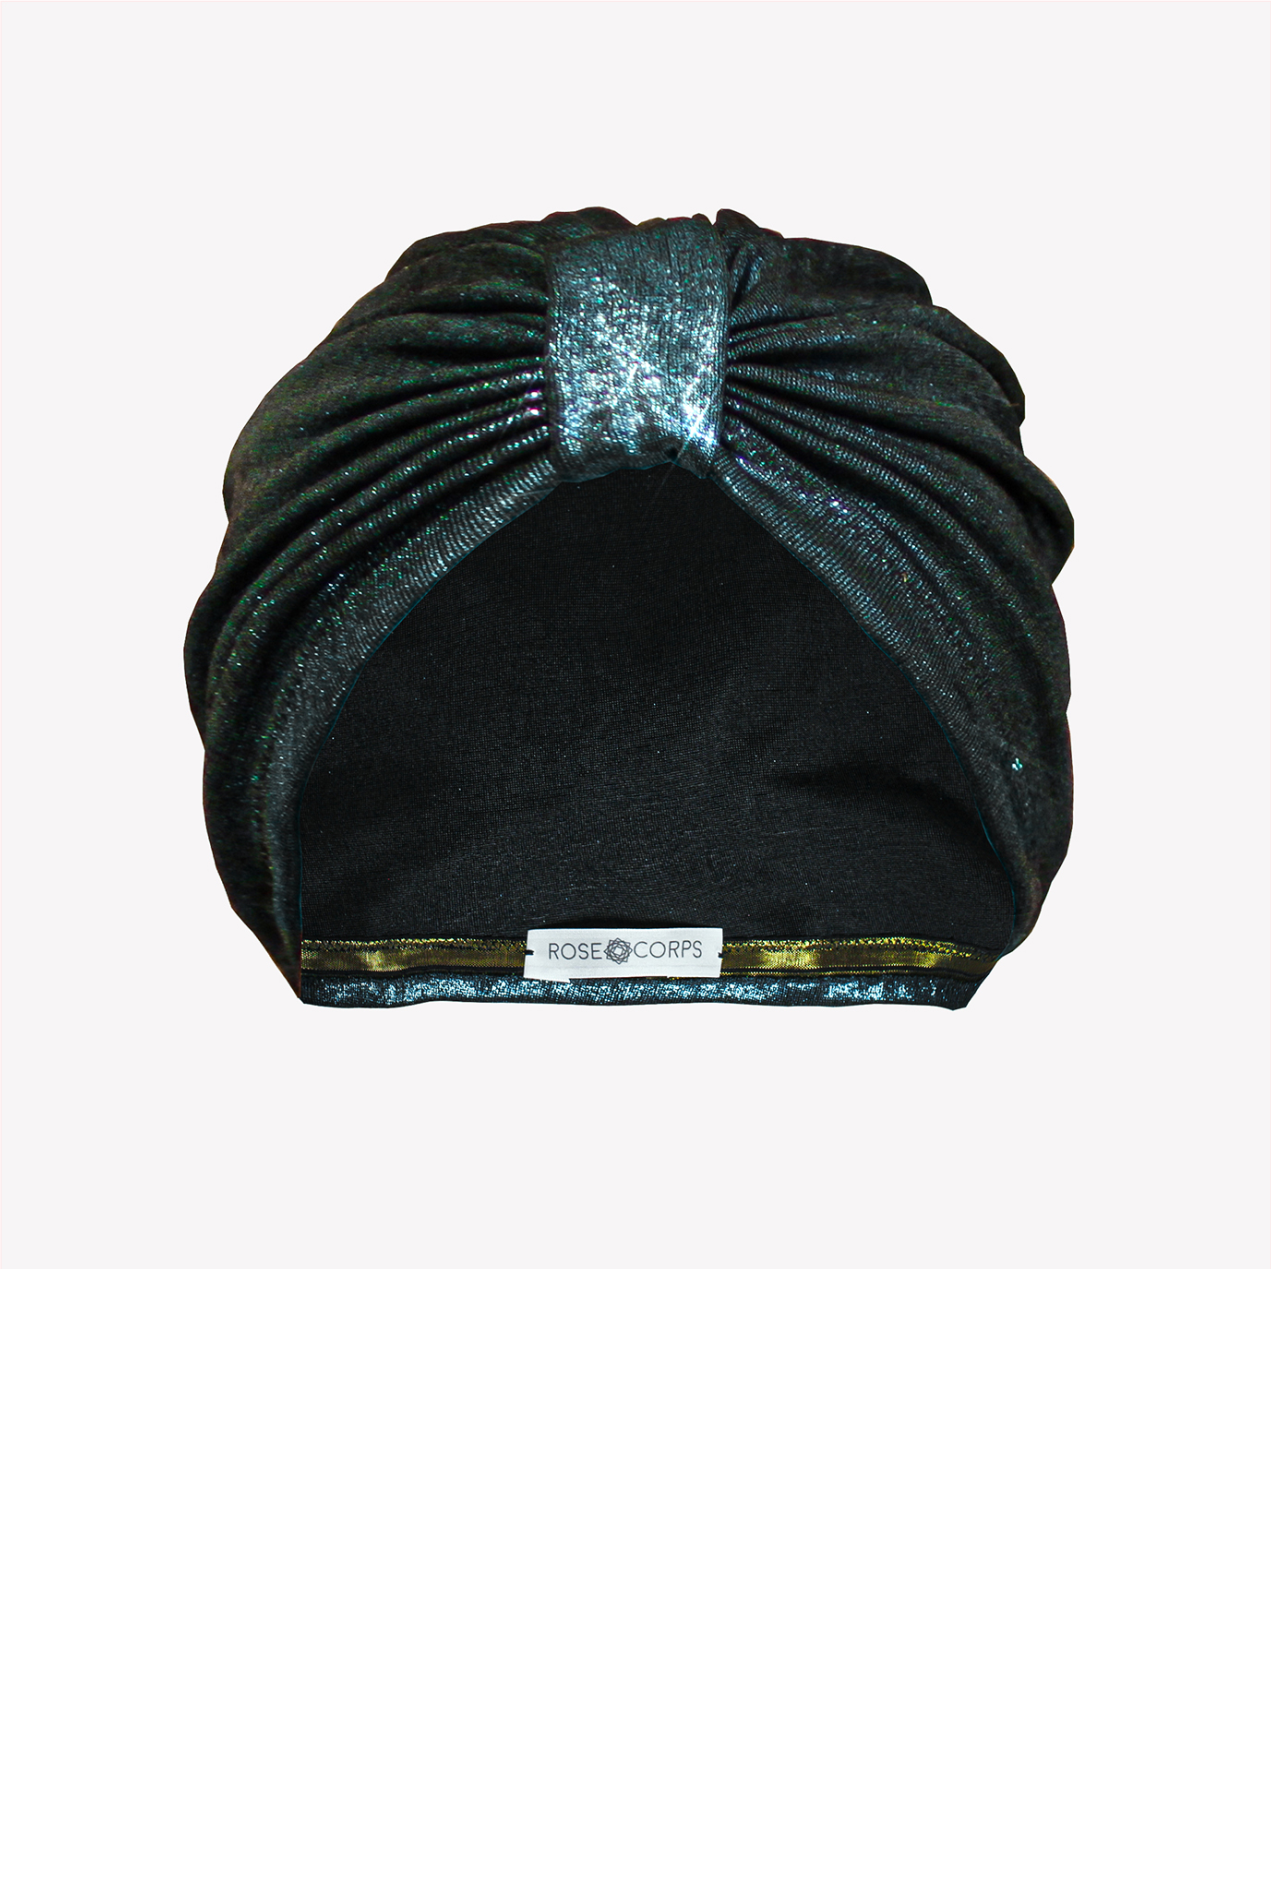 Metallic emerald turban hat